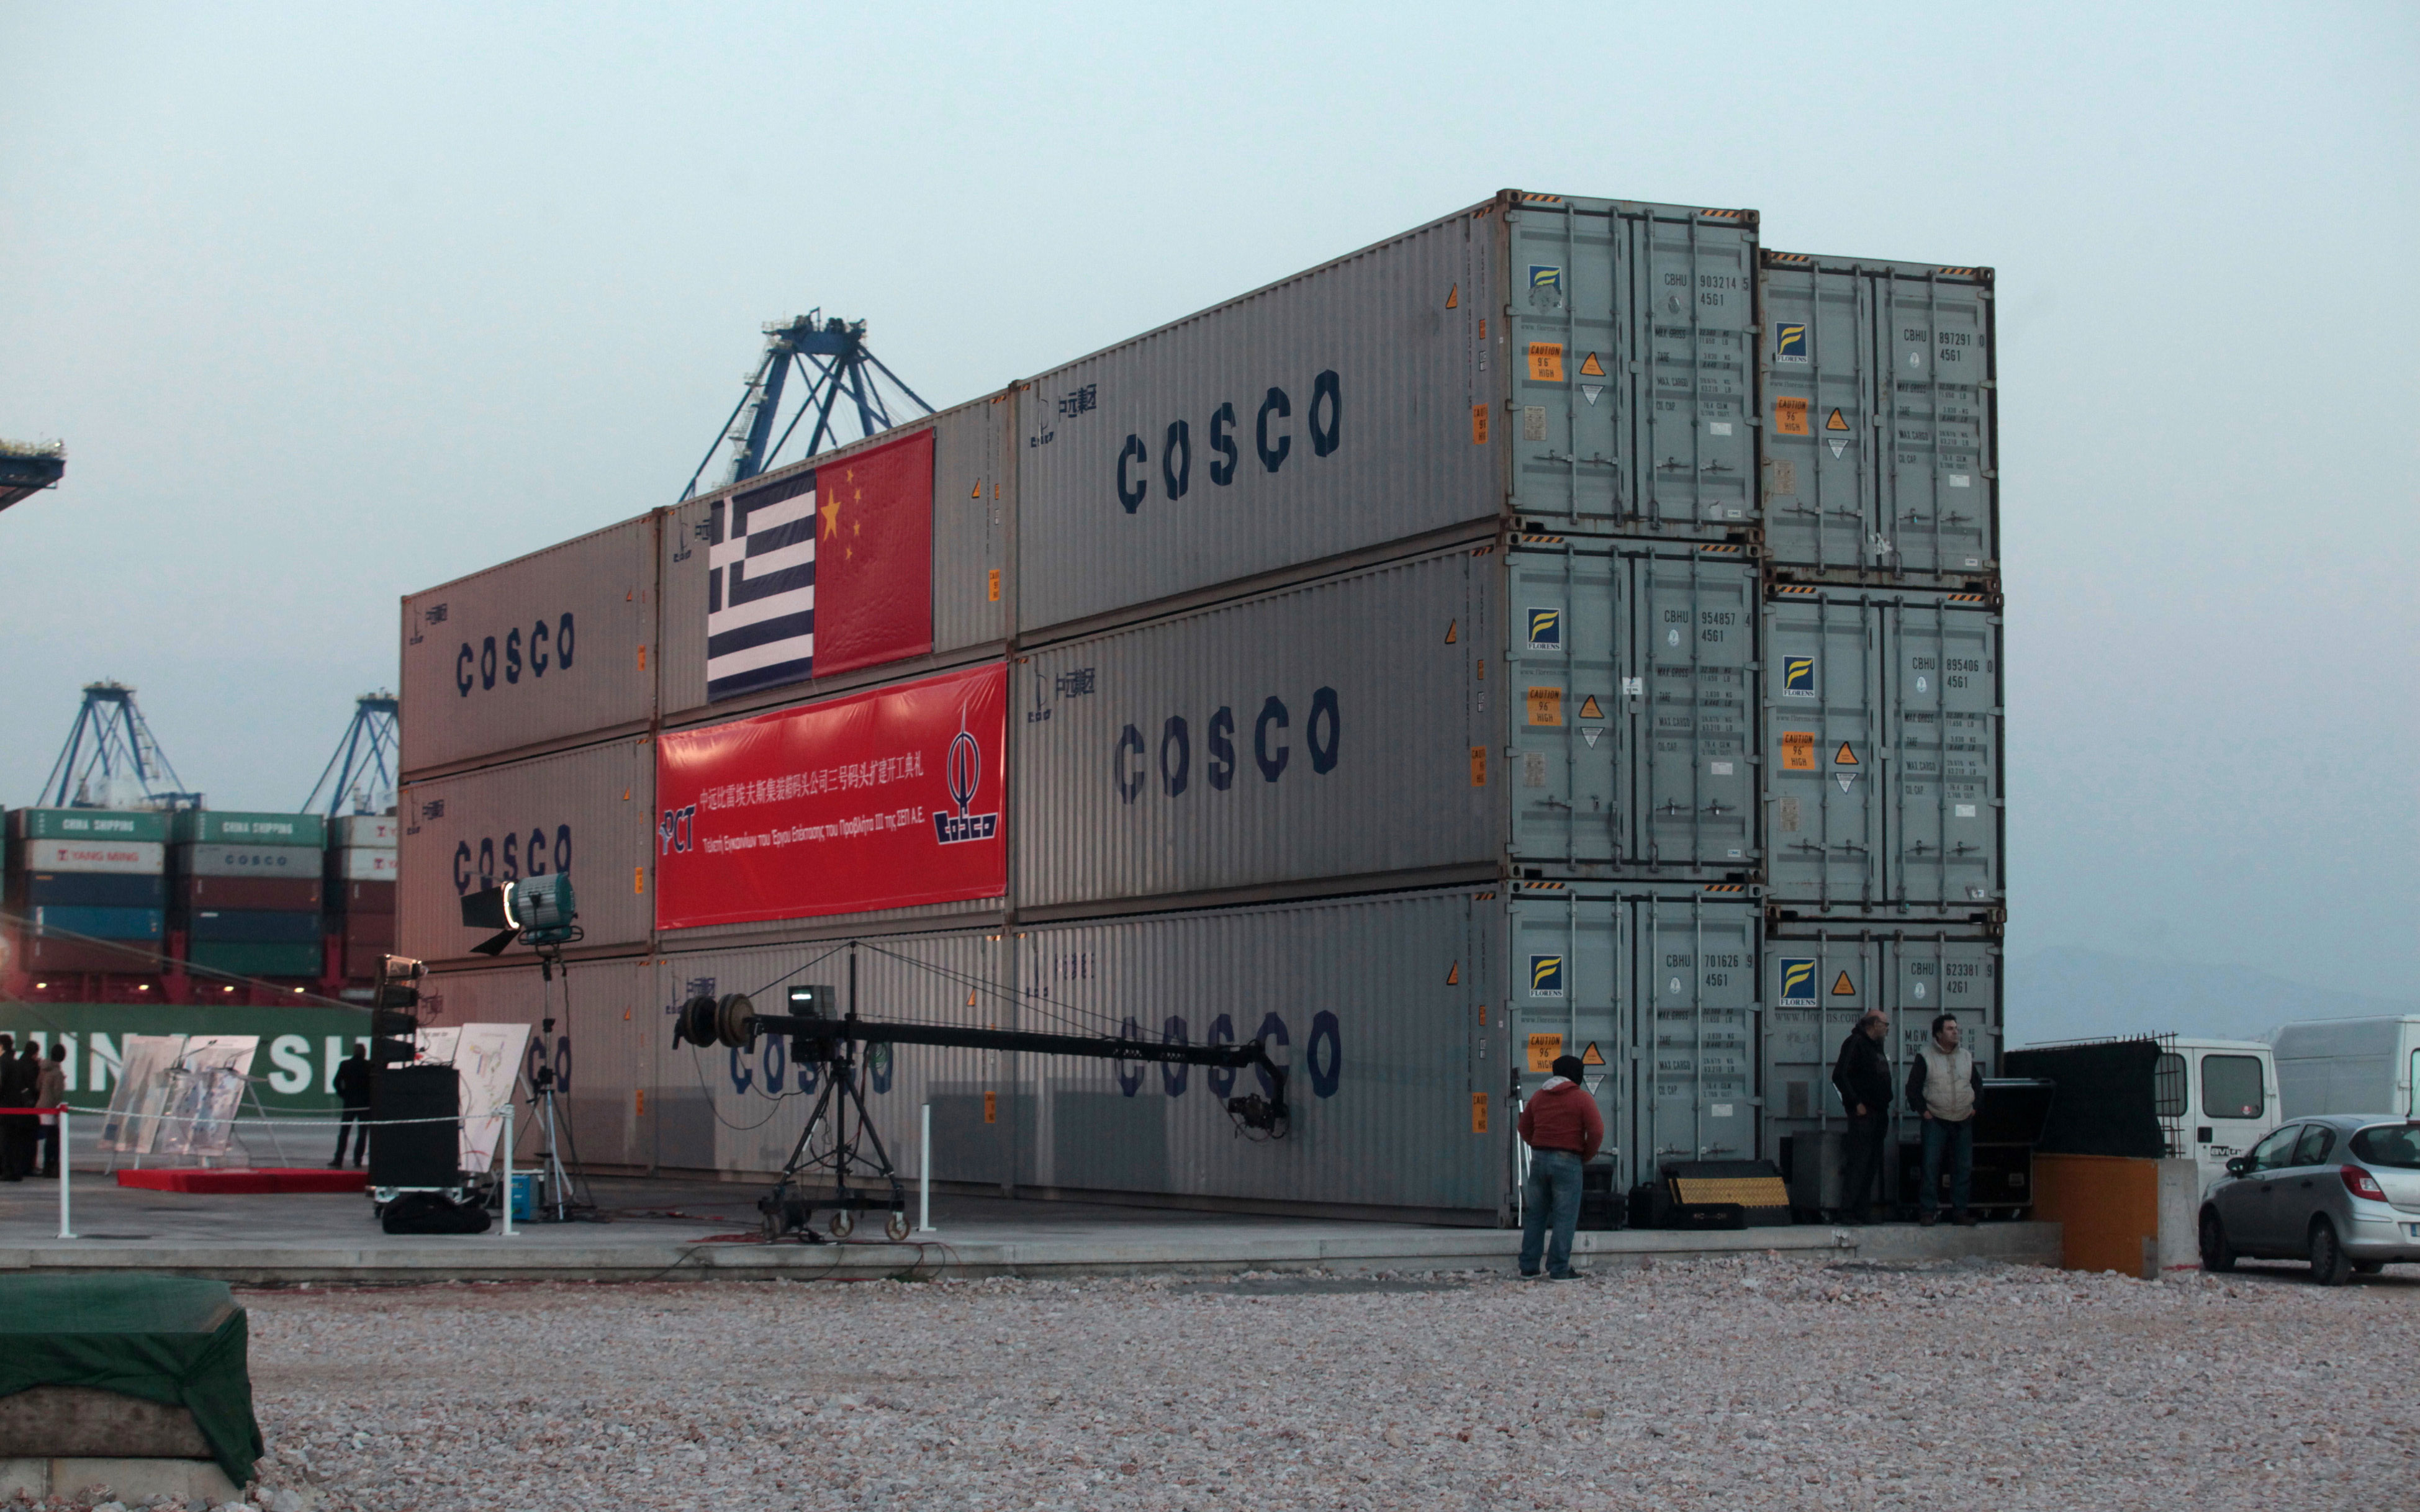 Η COSCO μεγαλώνει το λιμάνι του Πειραιά | Η ΚΑΘΗΜΕΡΙΝΗ